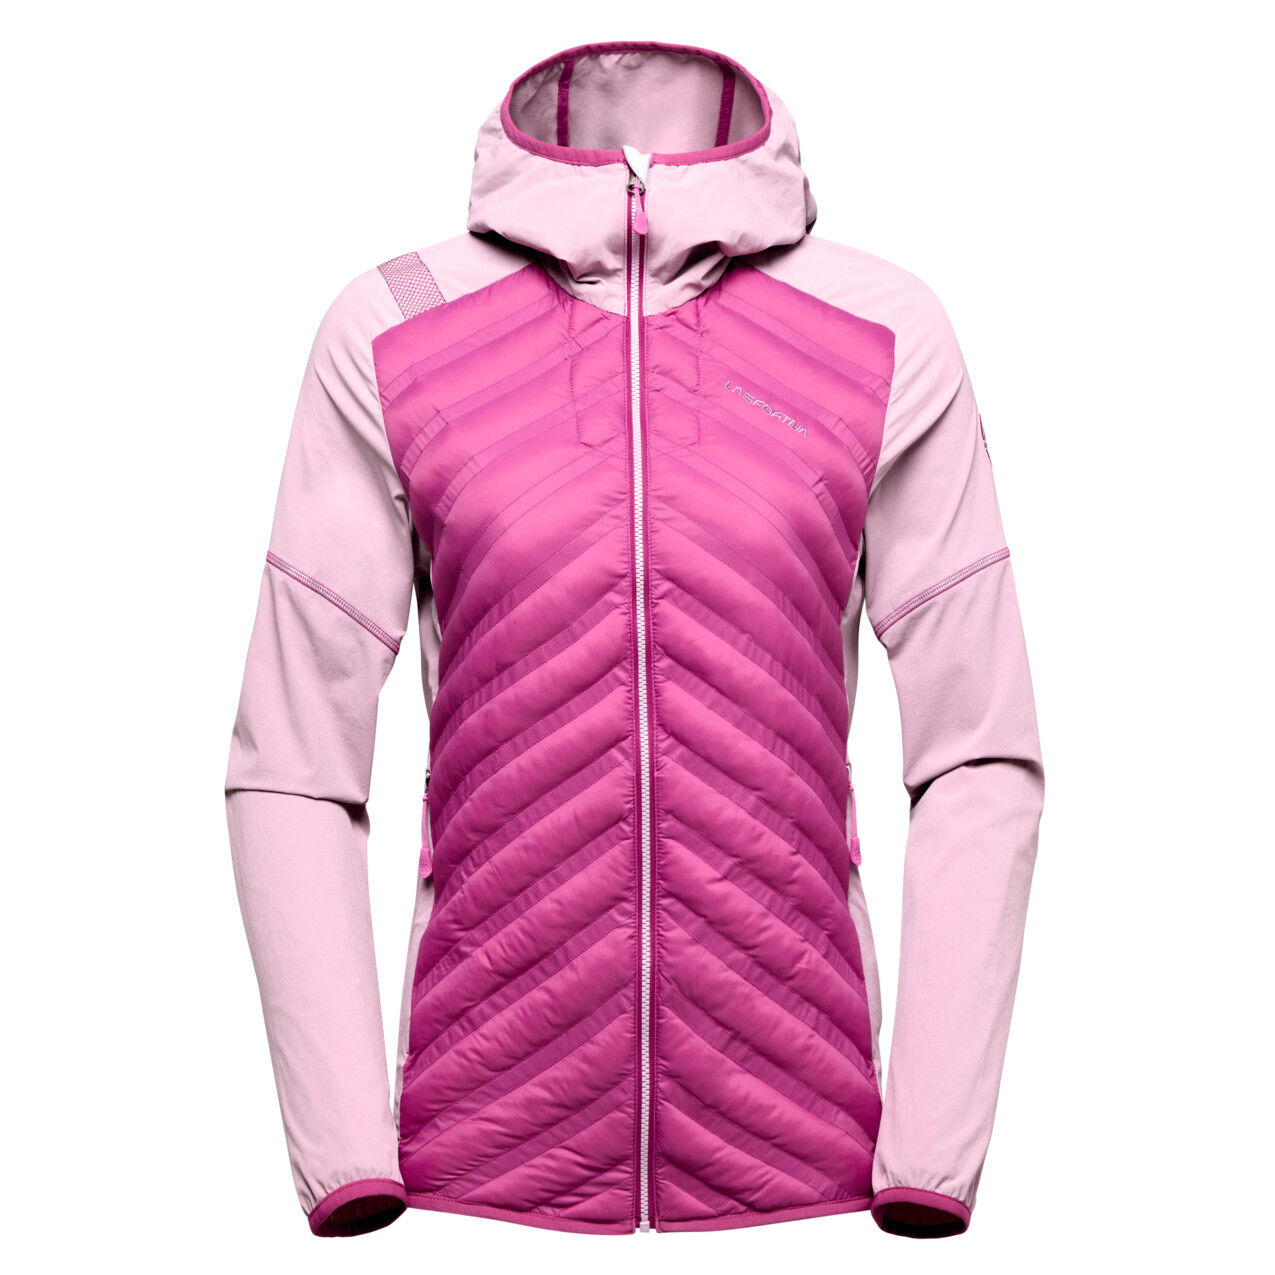 La Sportiva Koro JKT W - Hybrid jacket - Women's